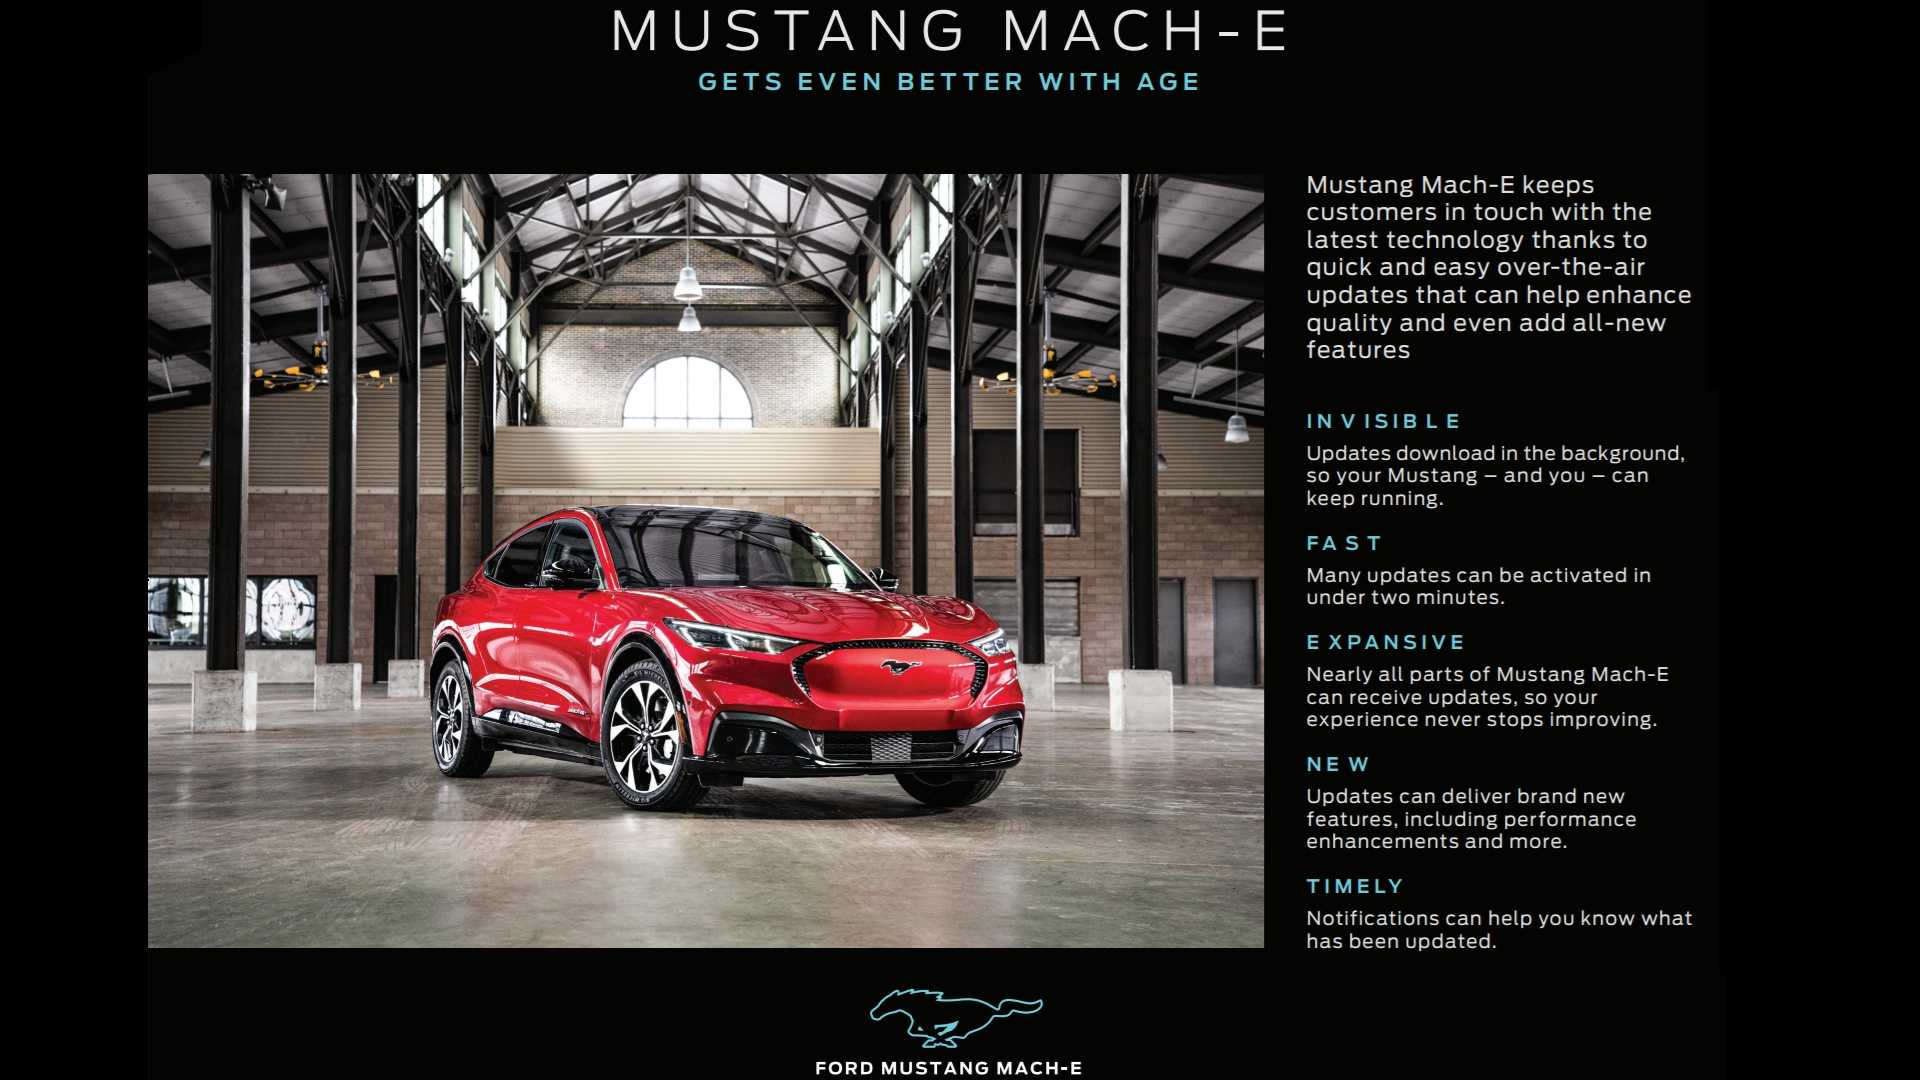 Ford предоставляет больше информации об обновлениях OTA для Mustang Mach-E